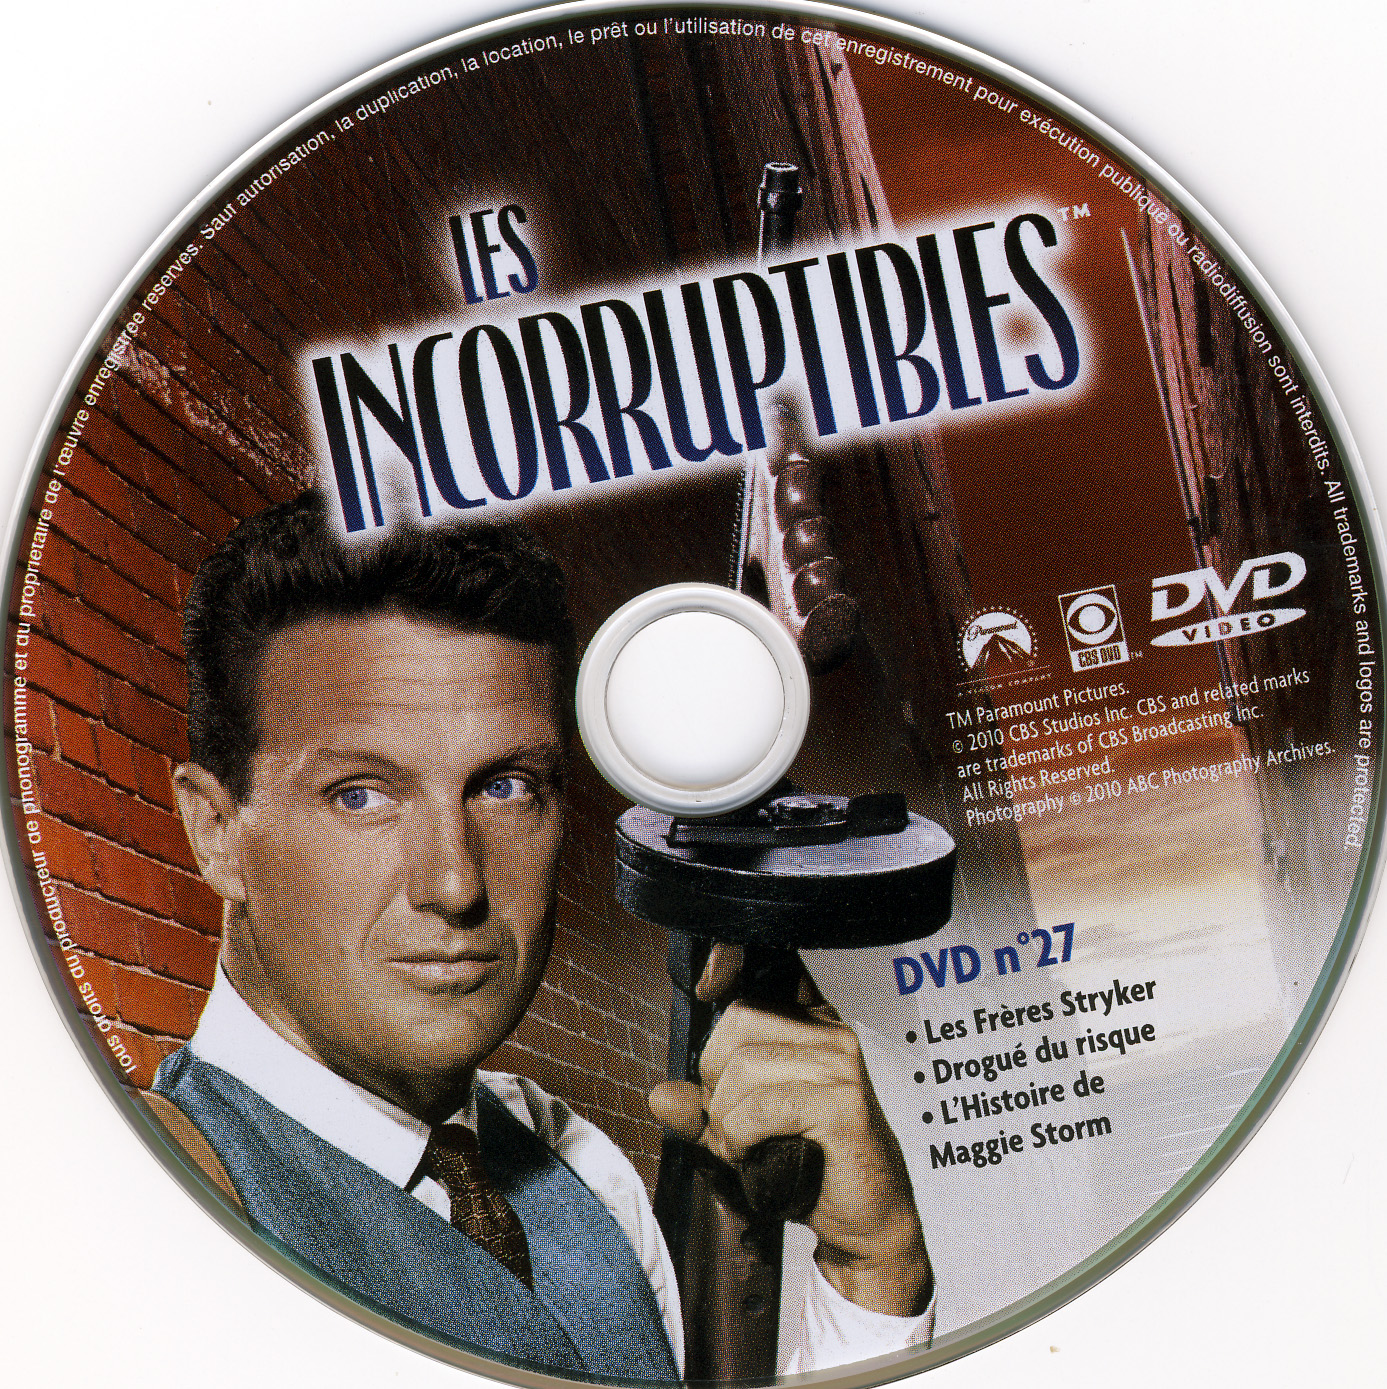 Les incorruptibles intgrale DVD 27